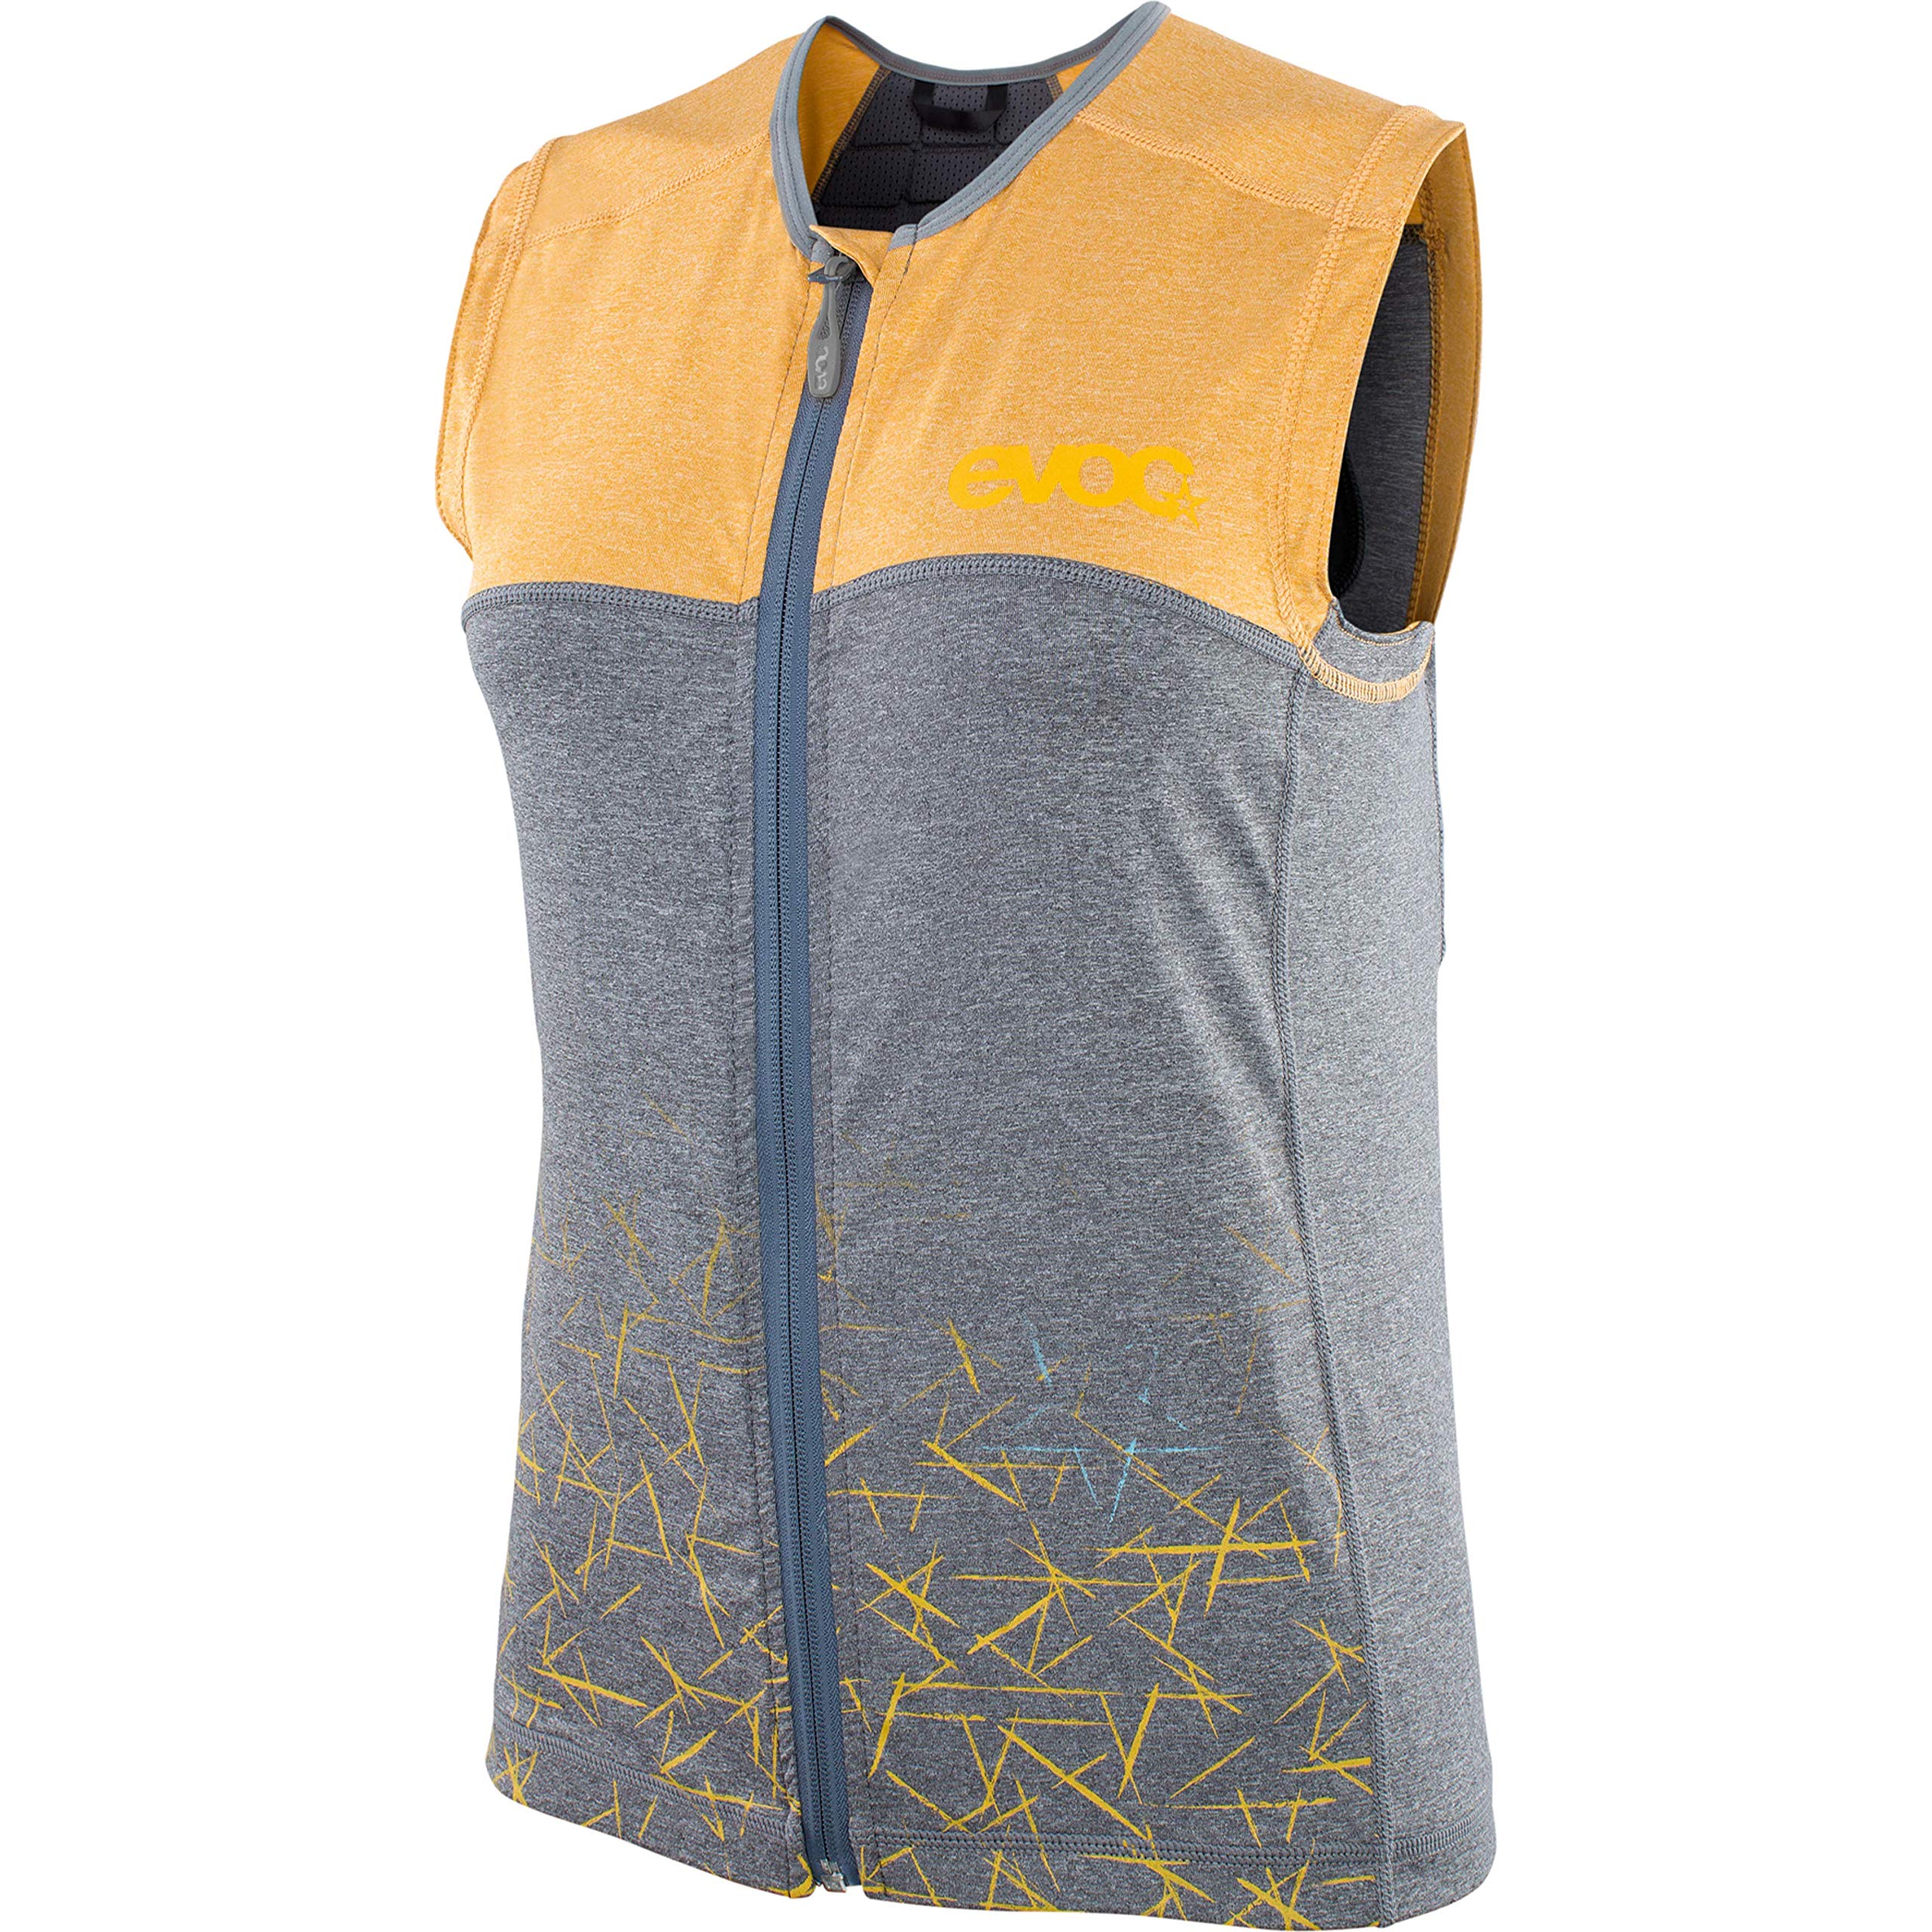 EVOC Damen Protect Protector Vest, Lehm Gelb/Carbon Grau, L